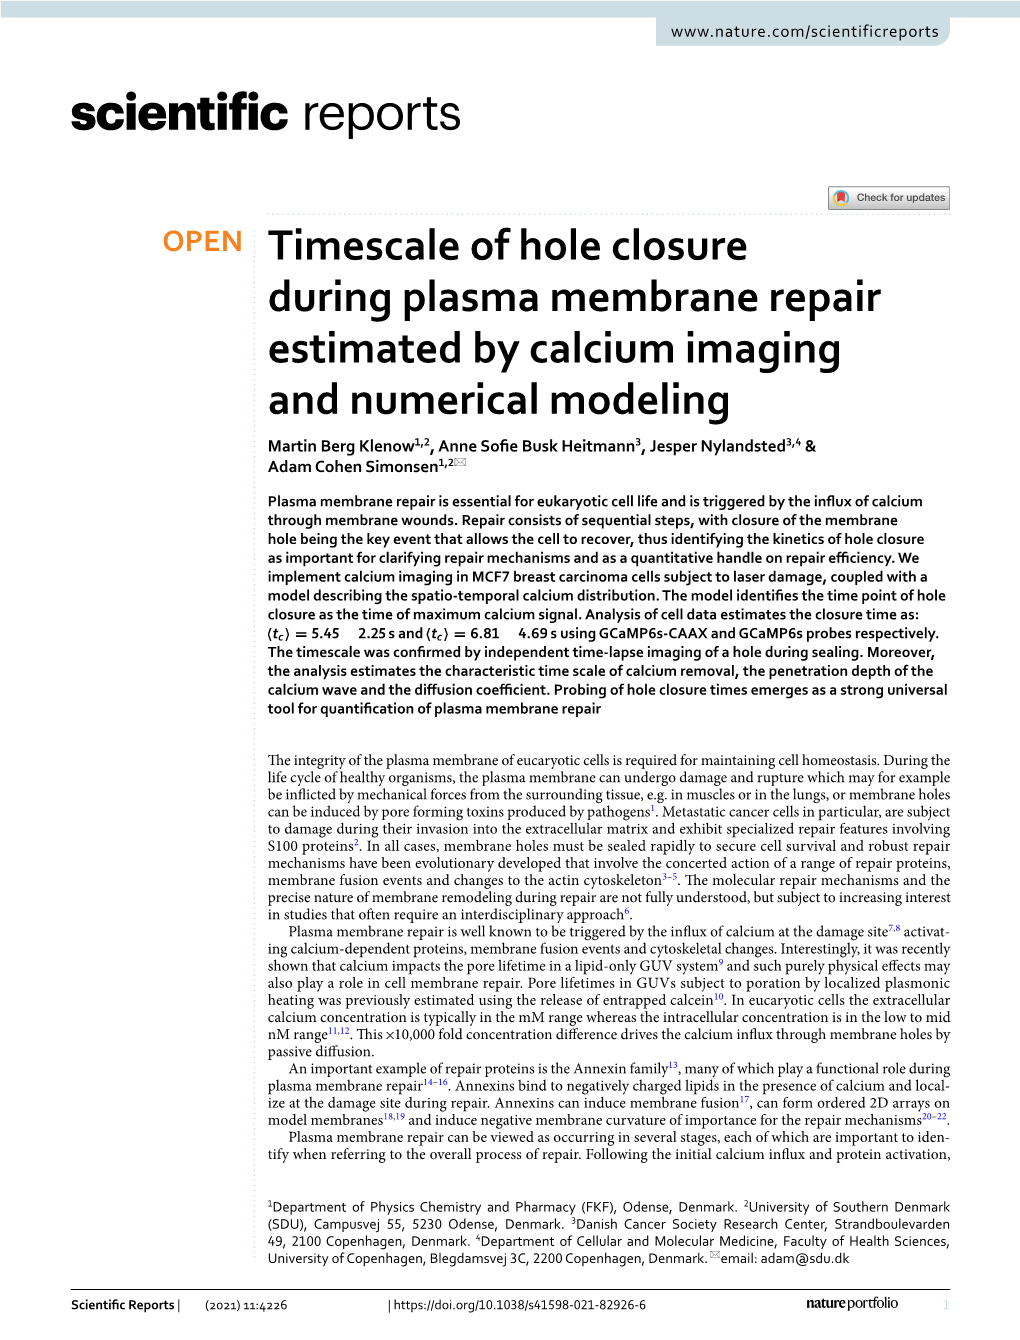 Timescale of Hole Closure During Plasma Membrane Repair Estimated